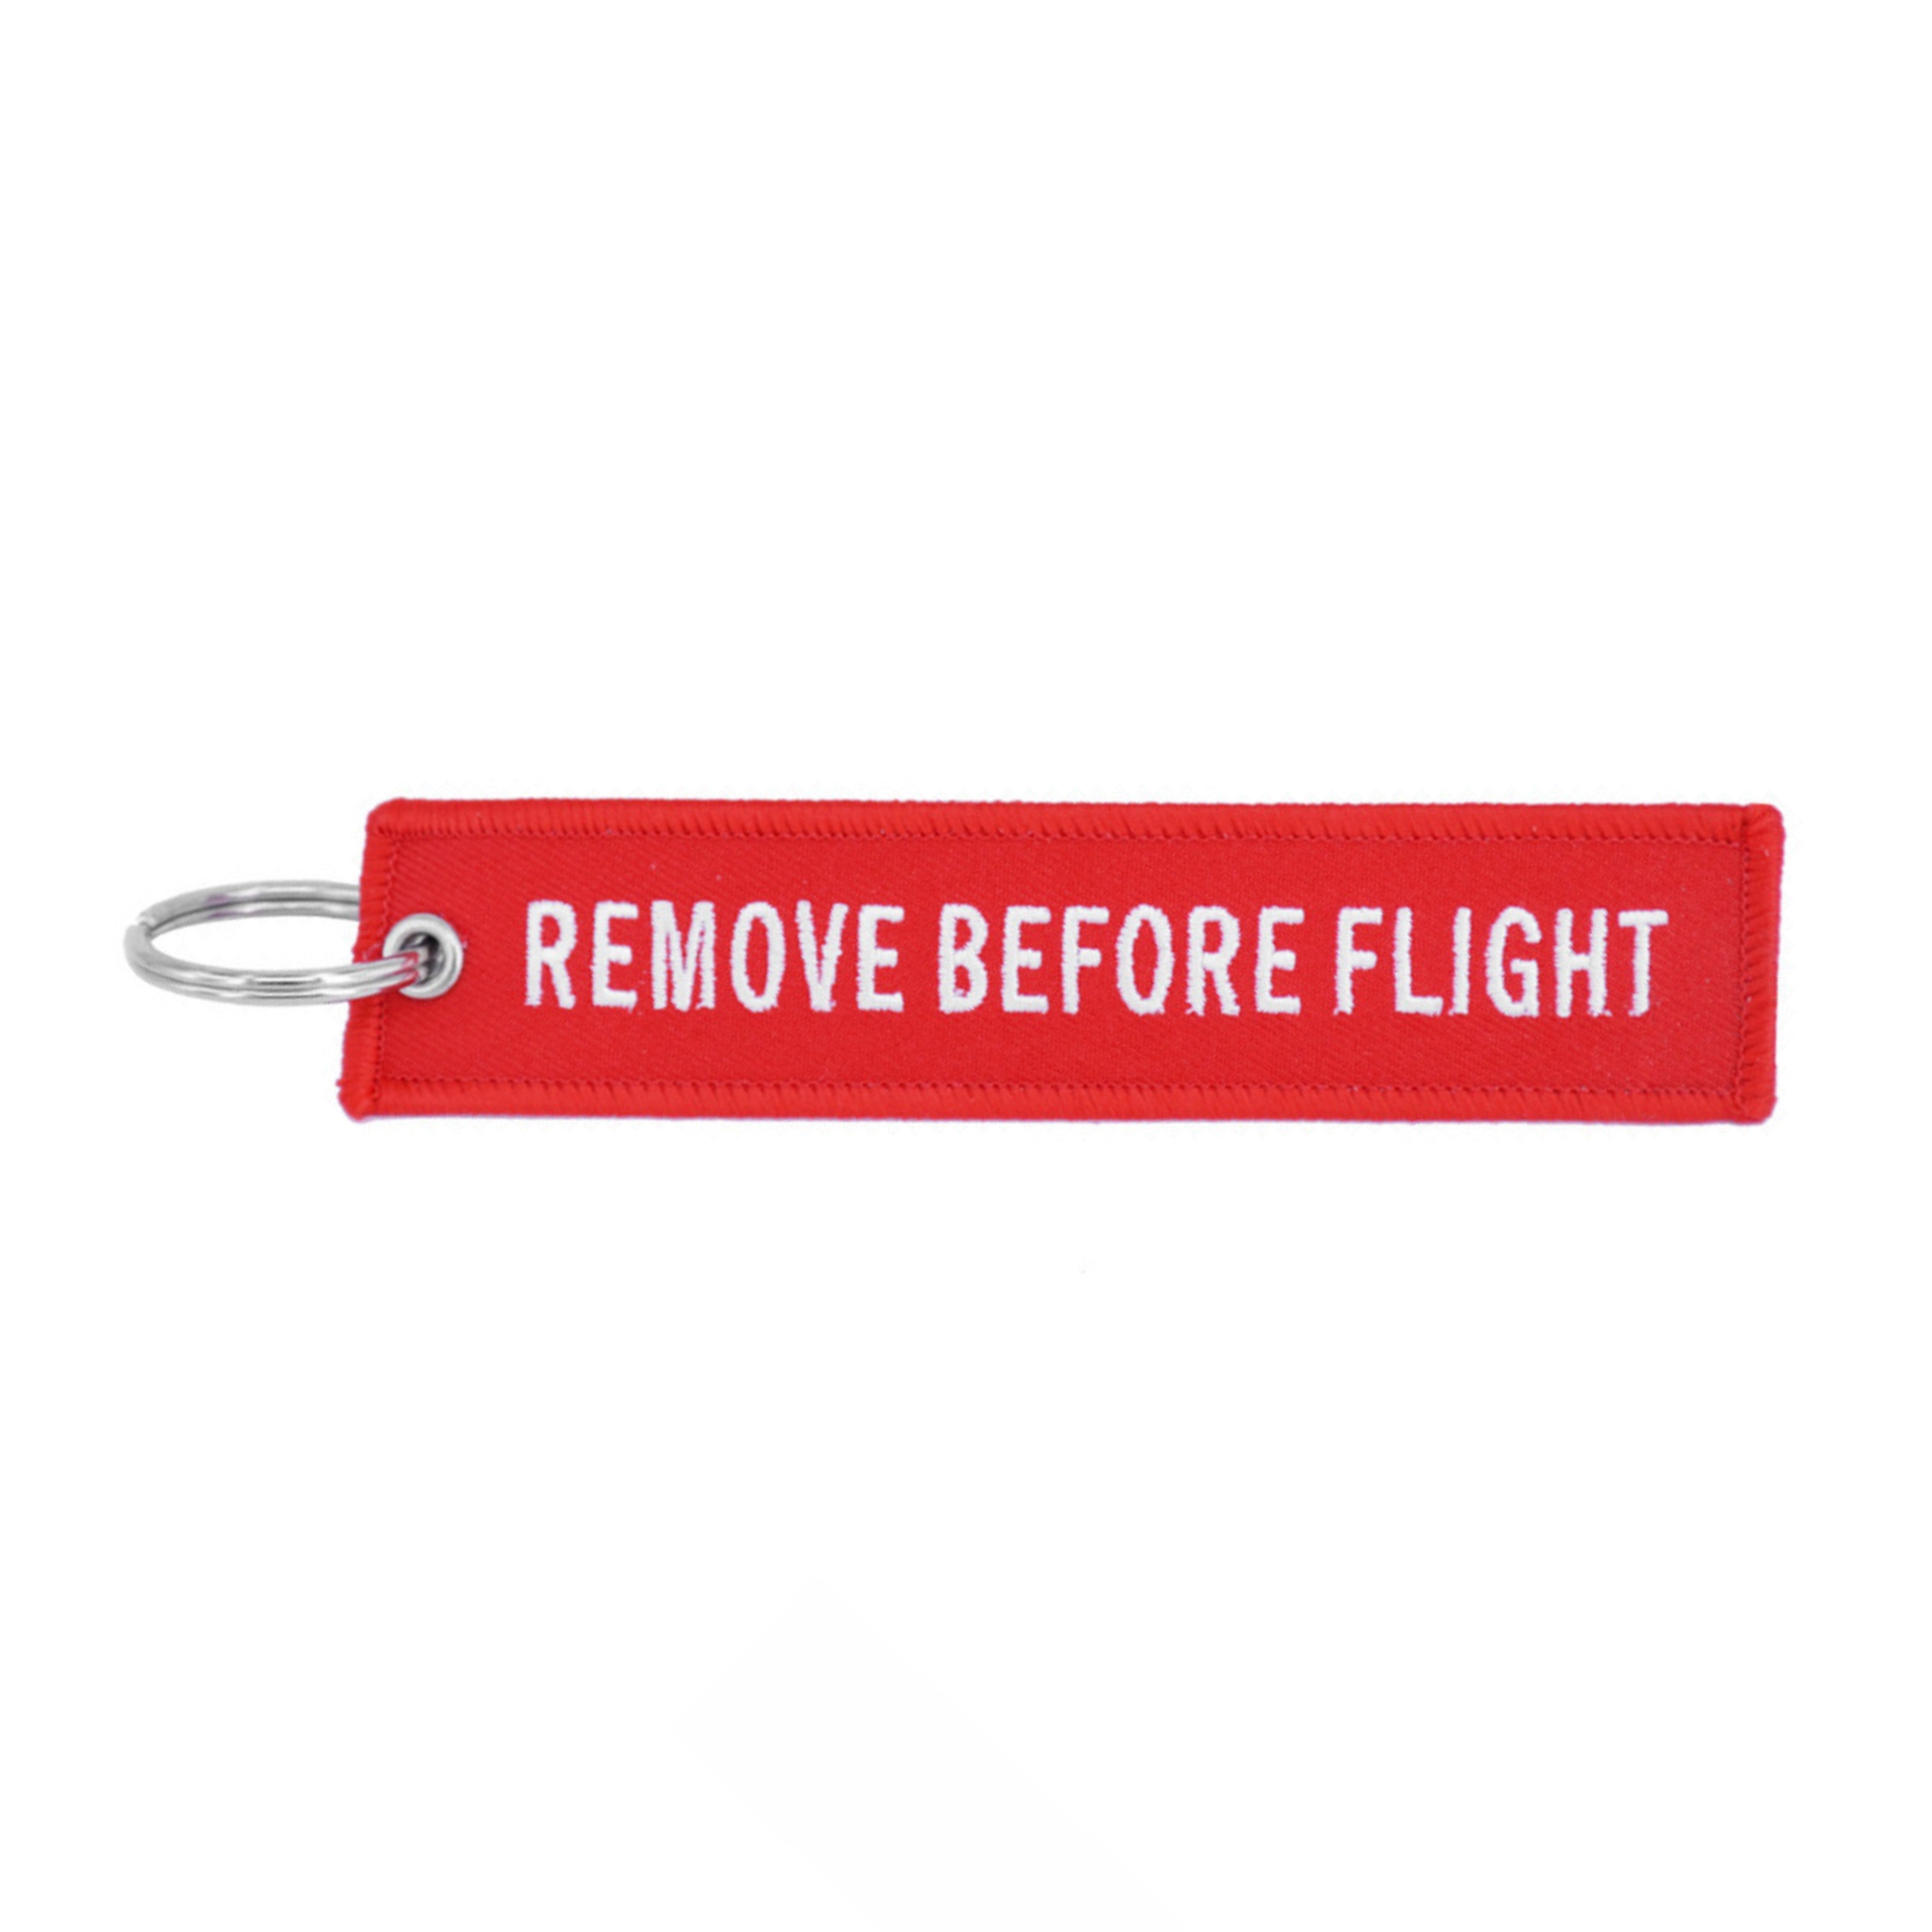 Remove Before Flight - Jaký význam má tato "klíčenka" v letectví?